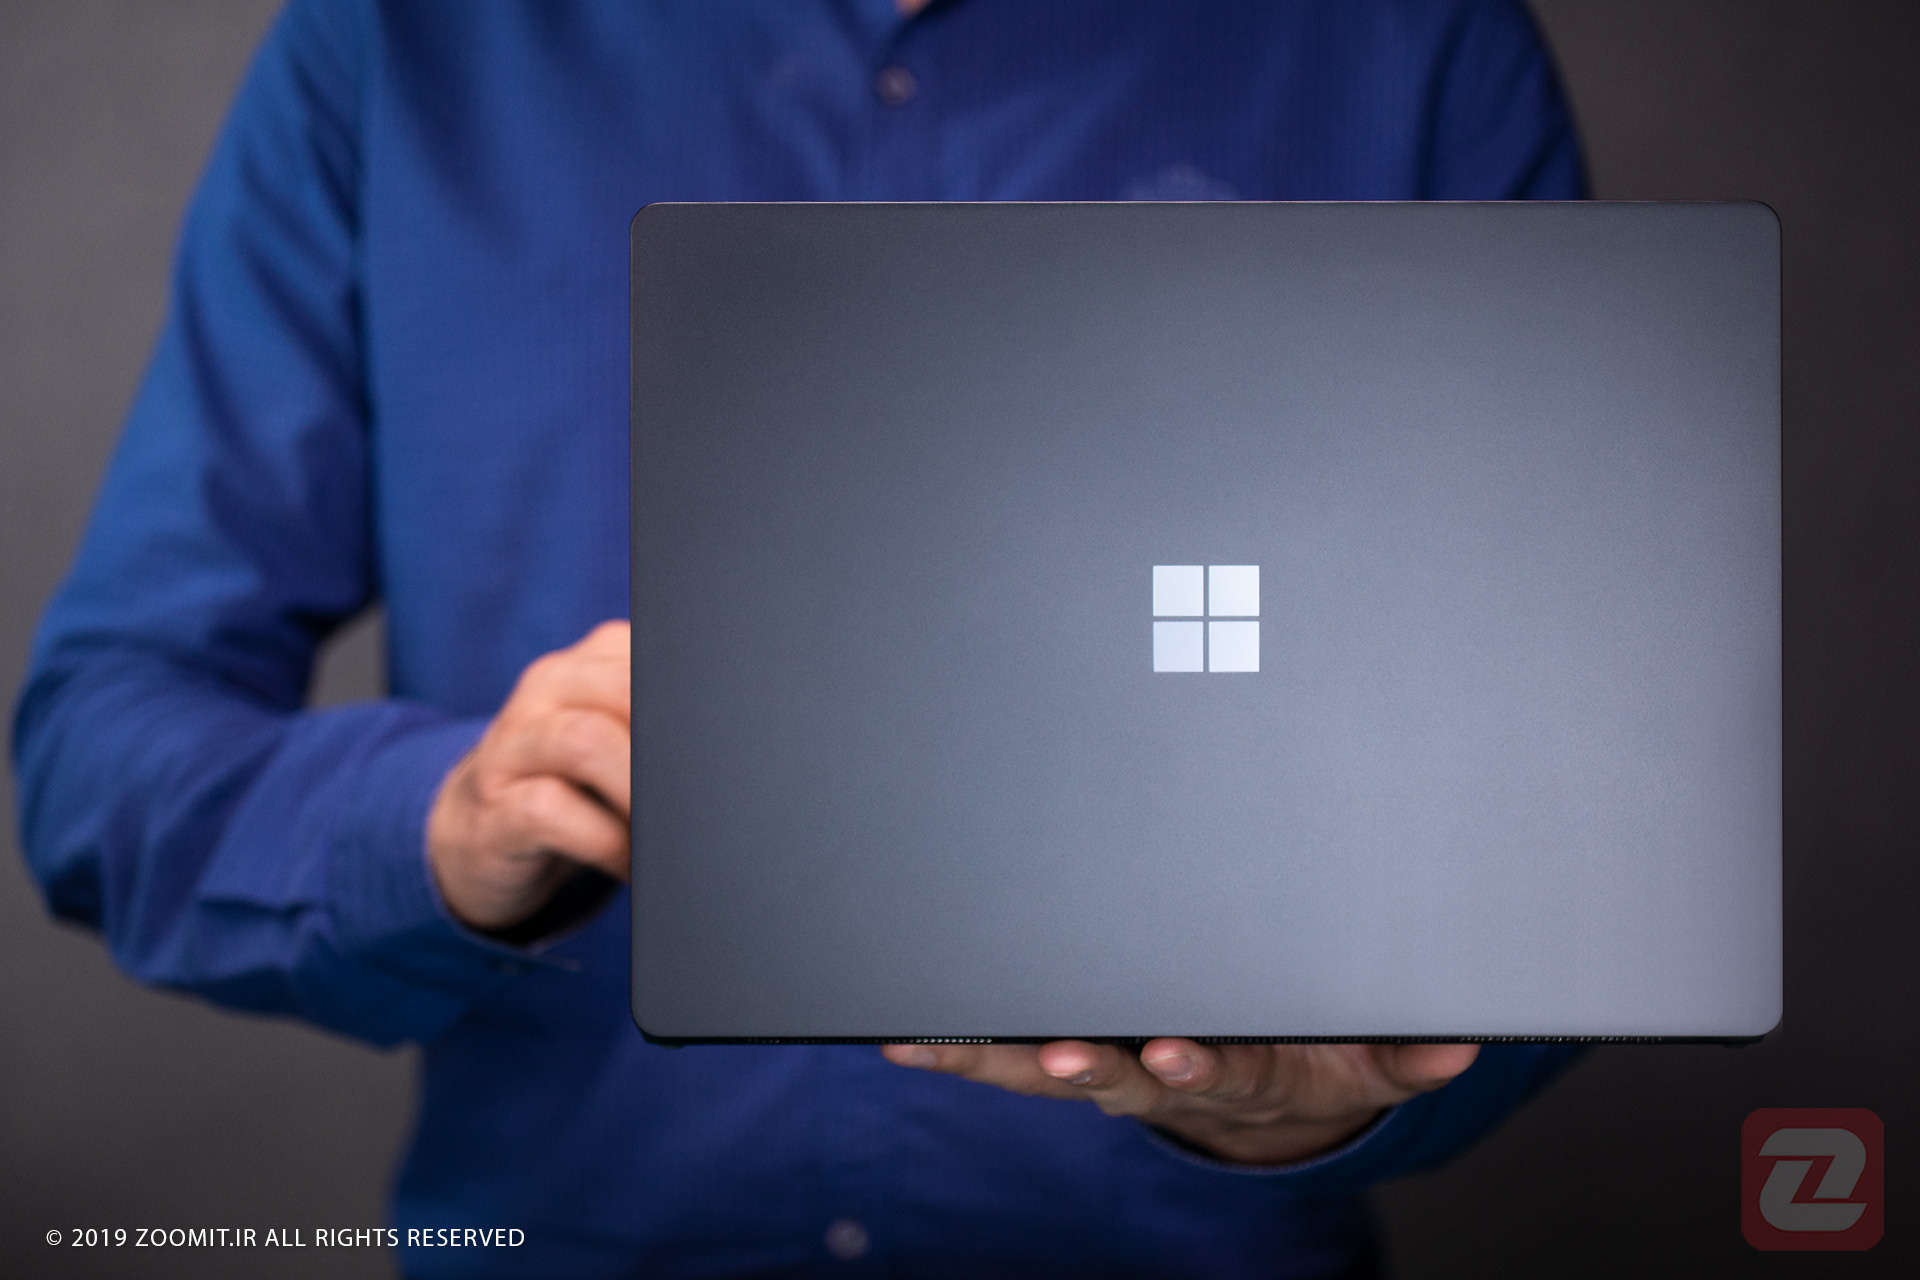 پشت سرفیس لپ تاپ 2 مایکروسافت رنگ خاکستری در دست فردی با لباس آبی